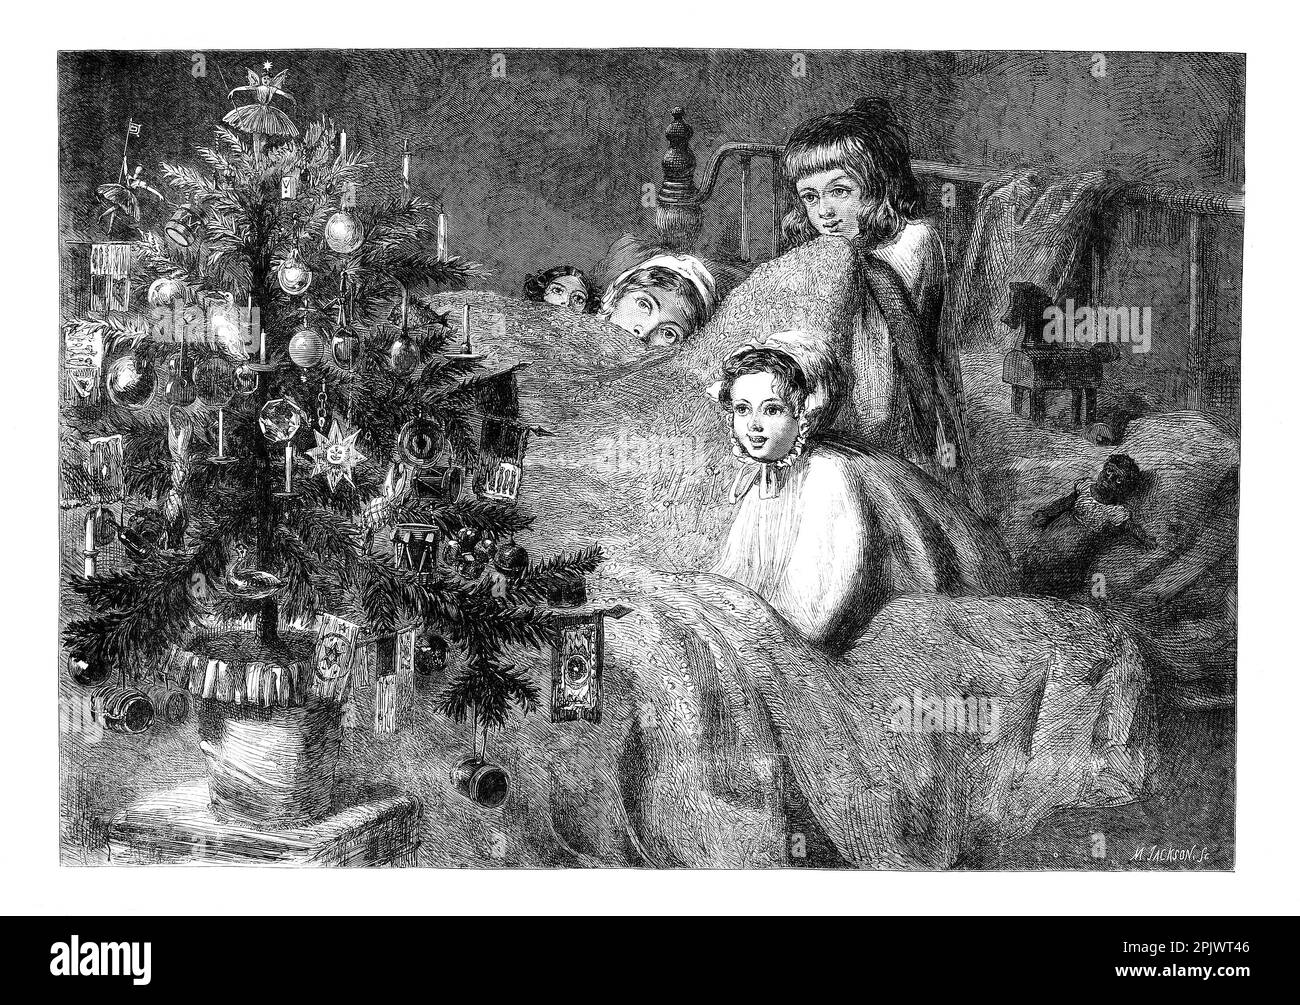 Ein viktorianisches Weihnachten, etwa 1865, bei dem vier Kinder im Bett einen Weihnachtsbaum bewundern. Stockfoto